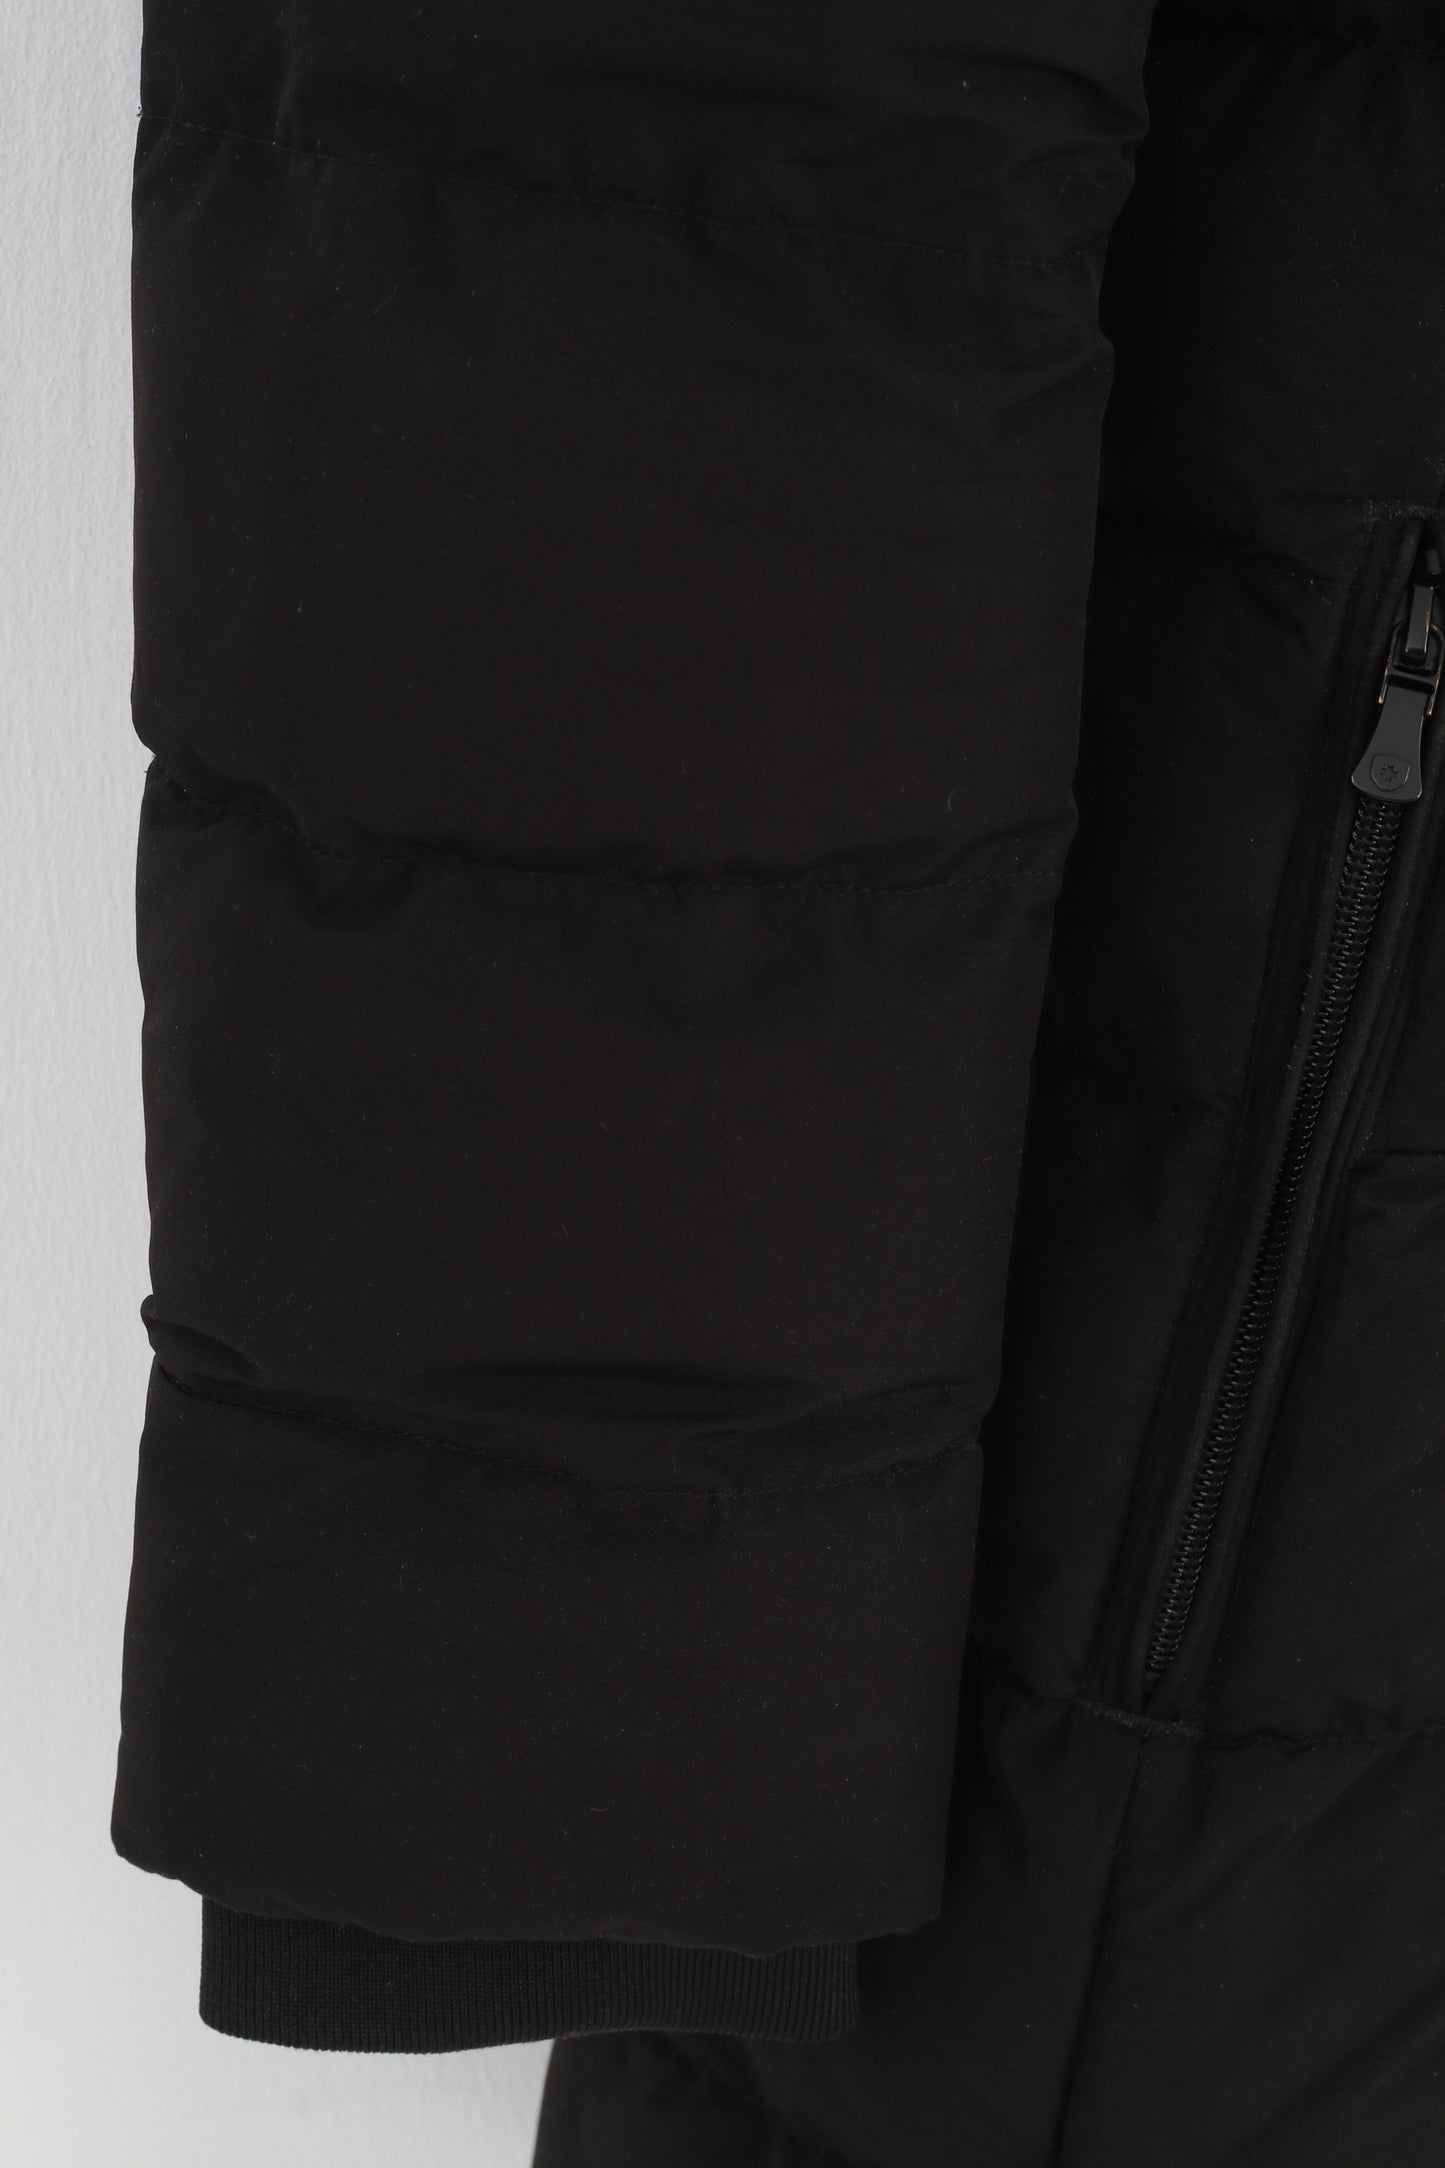 Wellensteyn Woman M Jacket Black Padded Full Zipper Hood Belvedere Long Winter Top